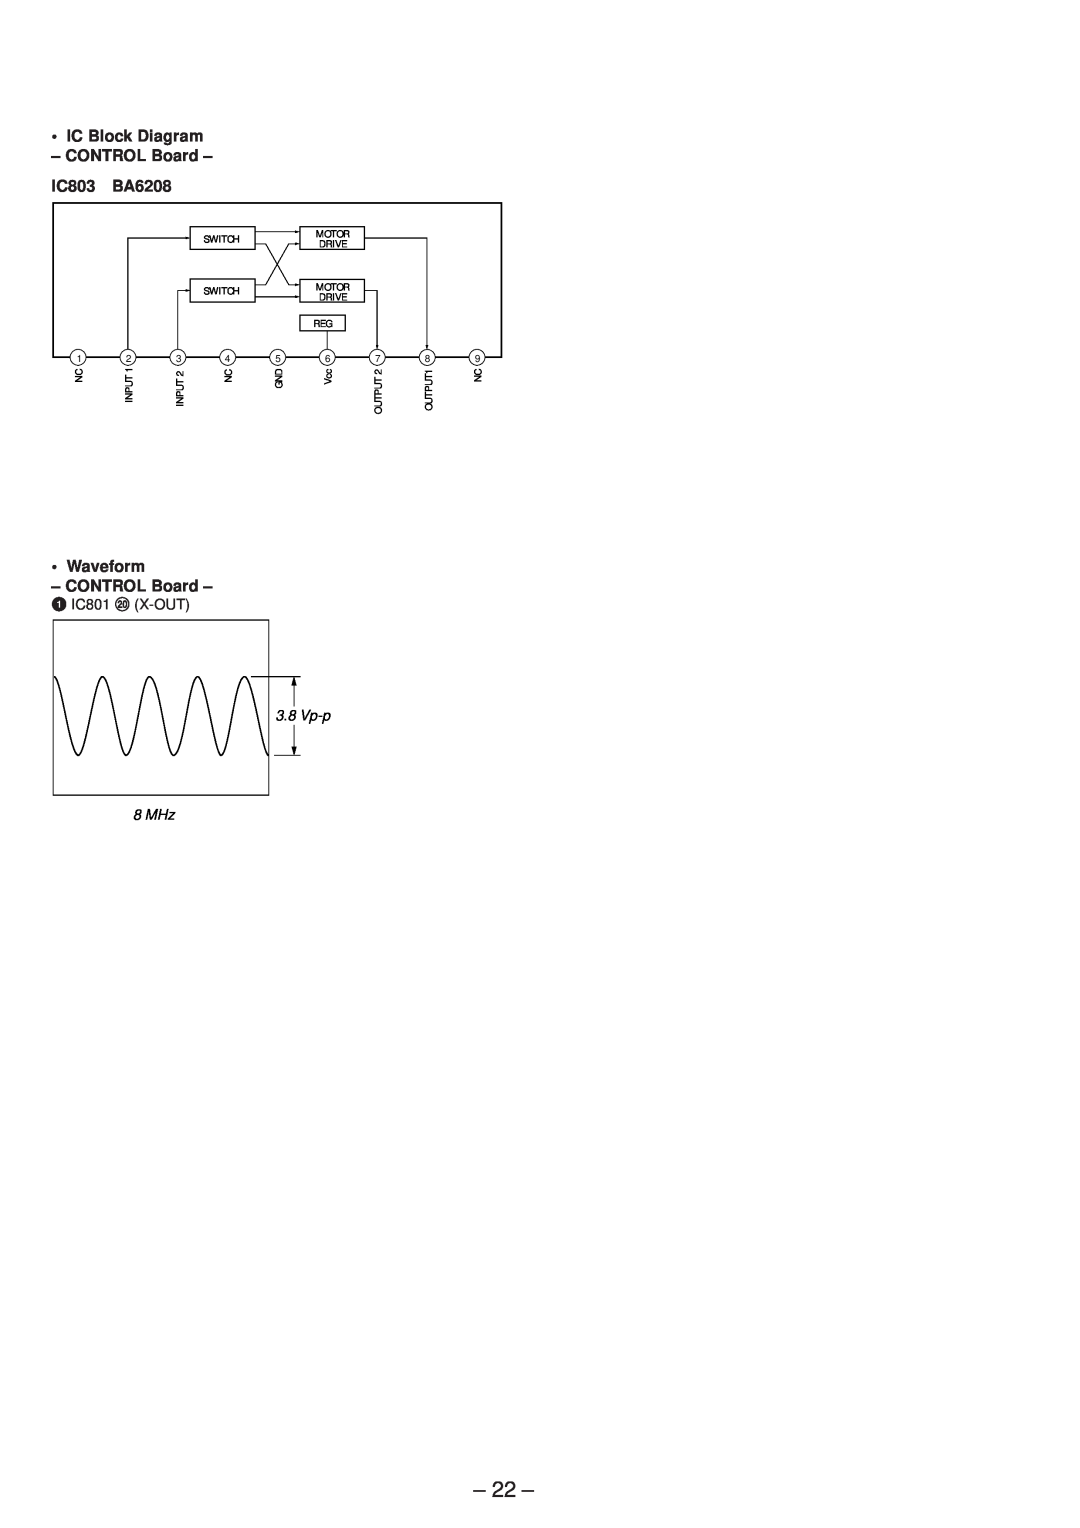 Sony TA-P9000ES service manual IC Block Diagram - CONTROL Board - IC803 BA6208, Waveform - CONTROL Board, Vp-p 8 MHz 